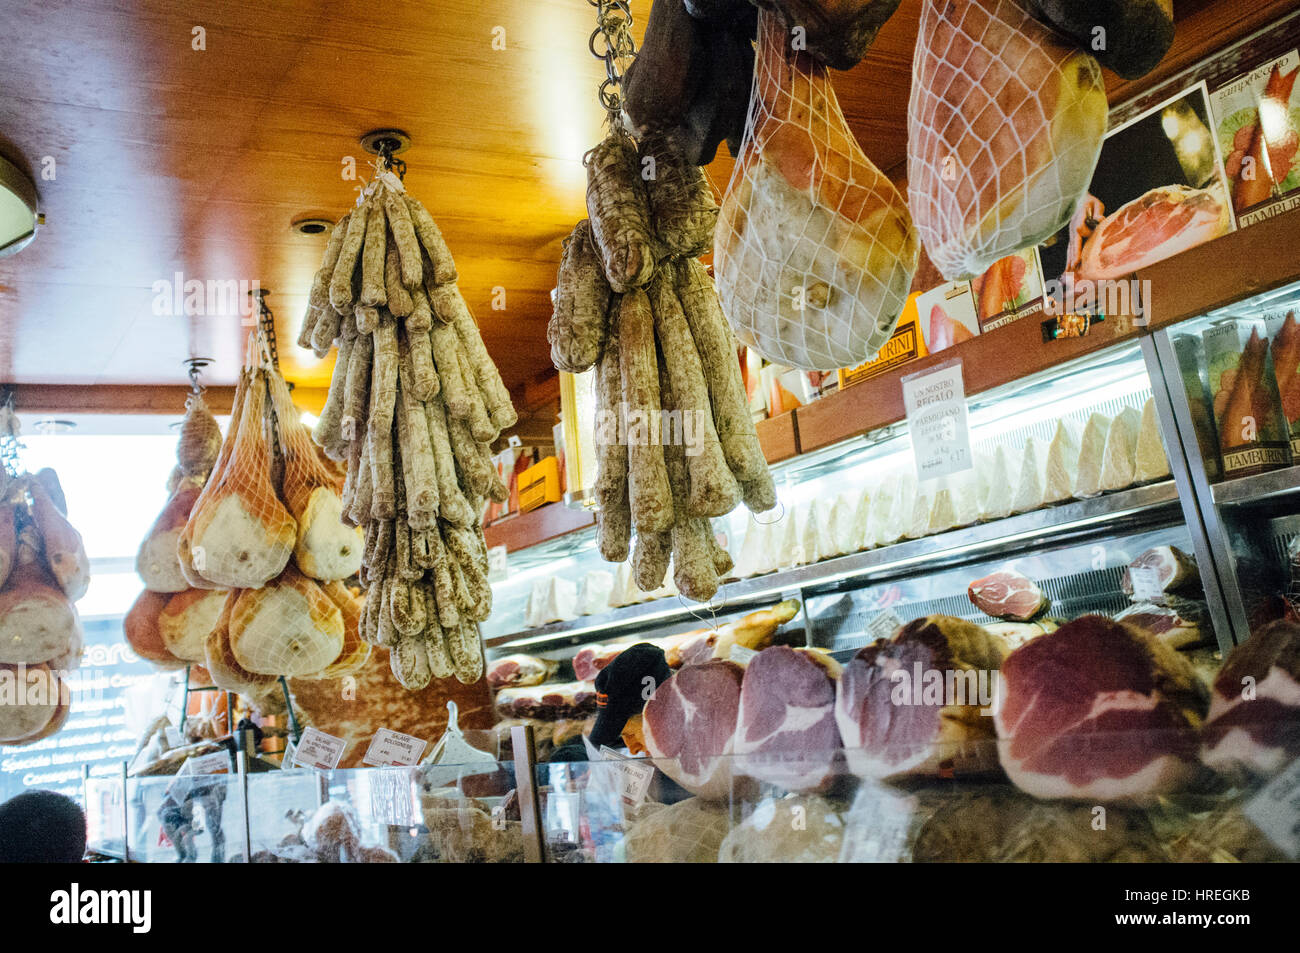 La ditta A.F. Tamburini è un negozio di Bologona, che vende una buona varietà di taglio a freddo e formaggio, Italia. Foto Stock